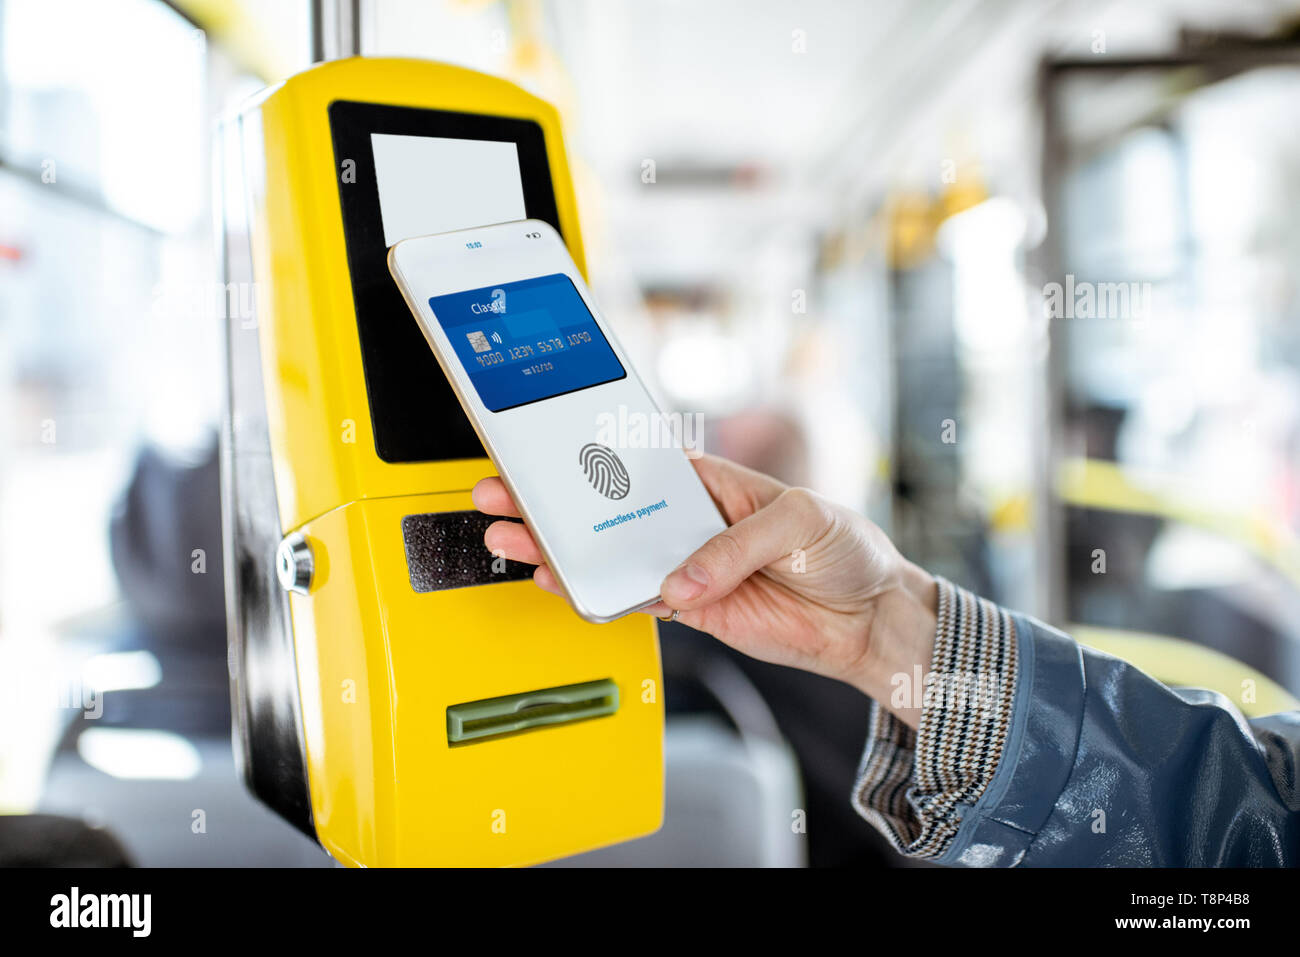 Payer avec conctactless smartphone pour les transports publics dans le tram, close-up view Banque D'Images